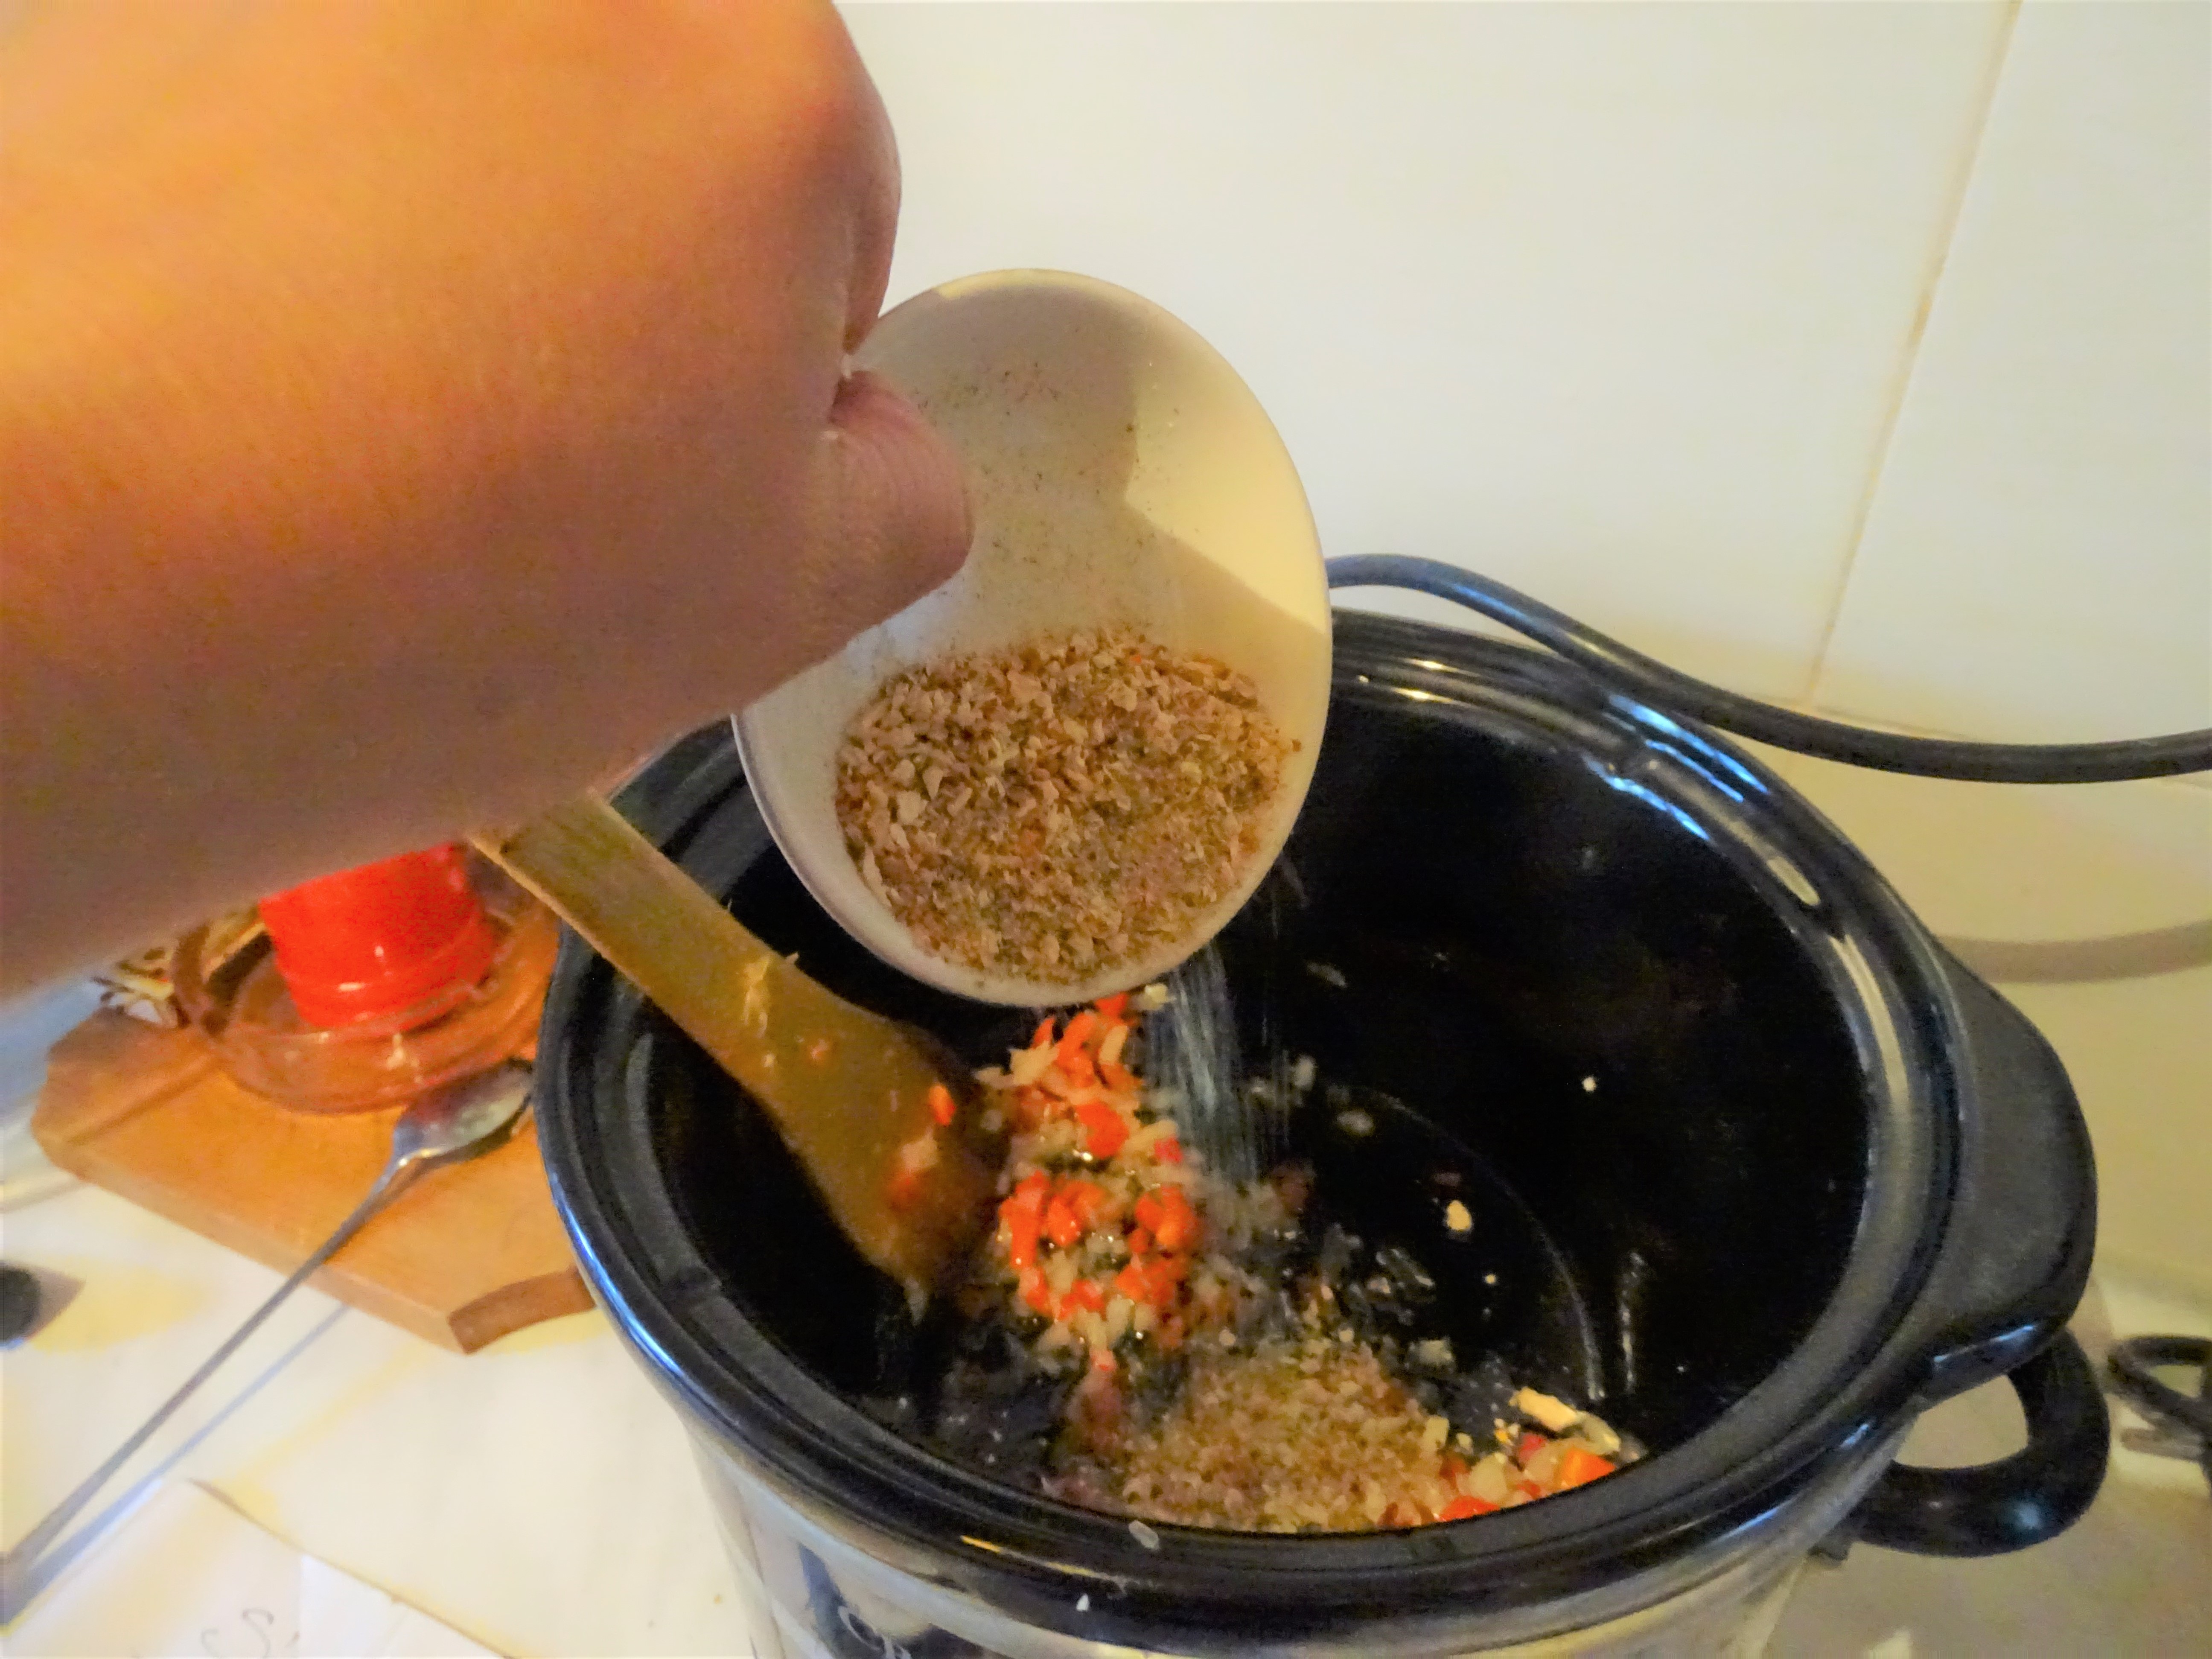 Ciorba de coaste afumate la slow cooker Crock-Pot